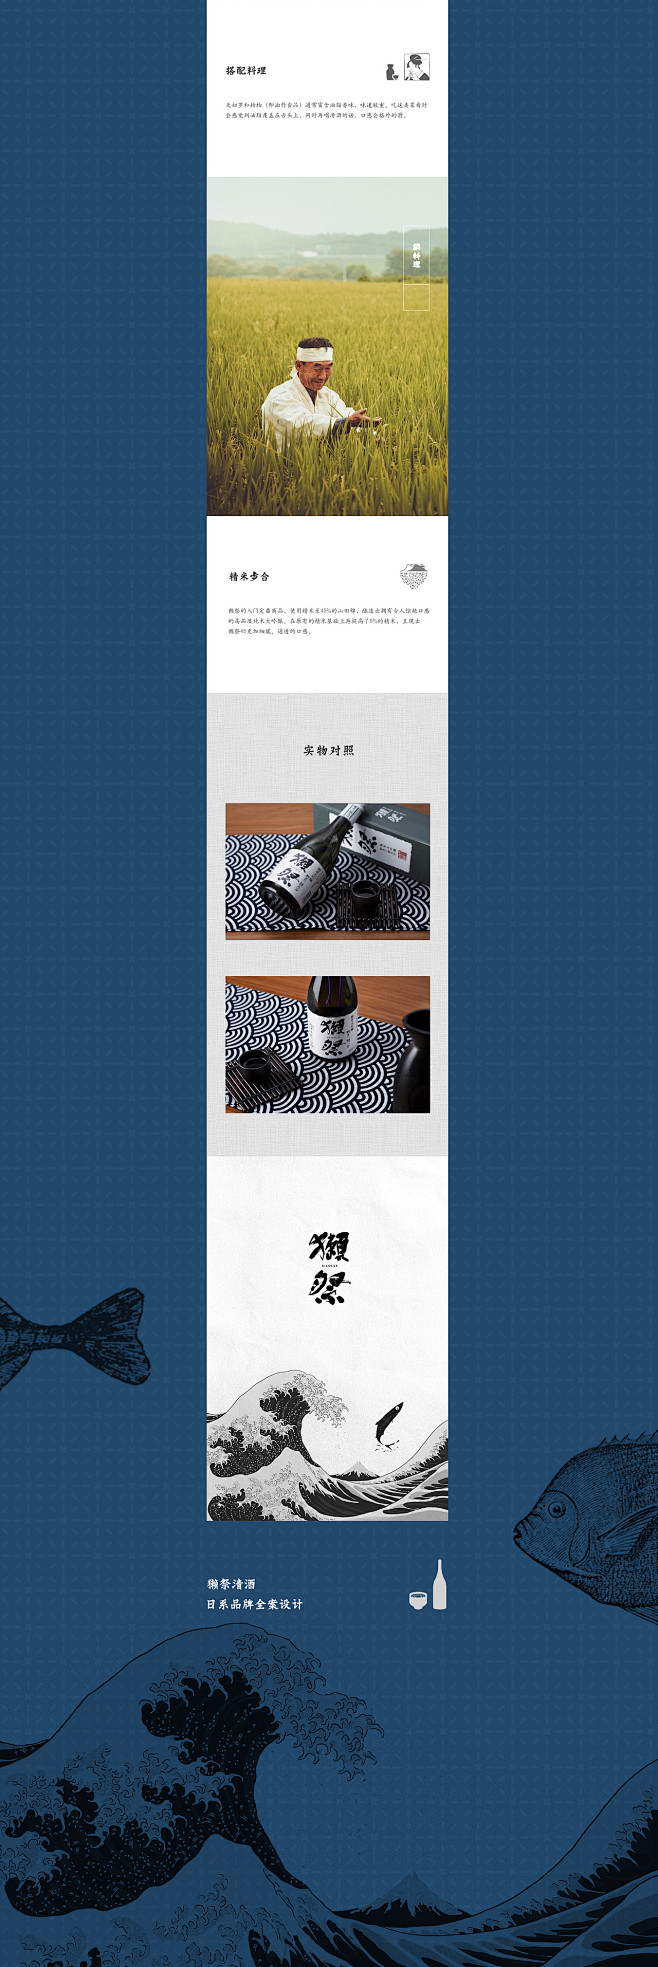 日系清酒“獭祭”详情页、主页品牌视觉全案...